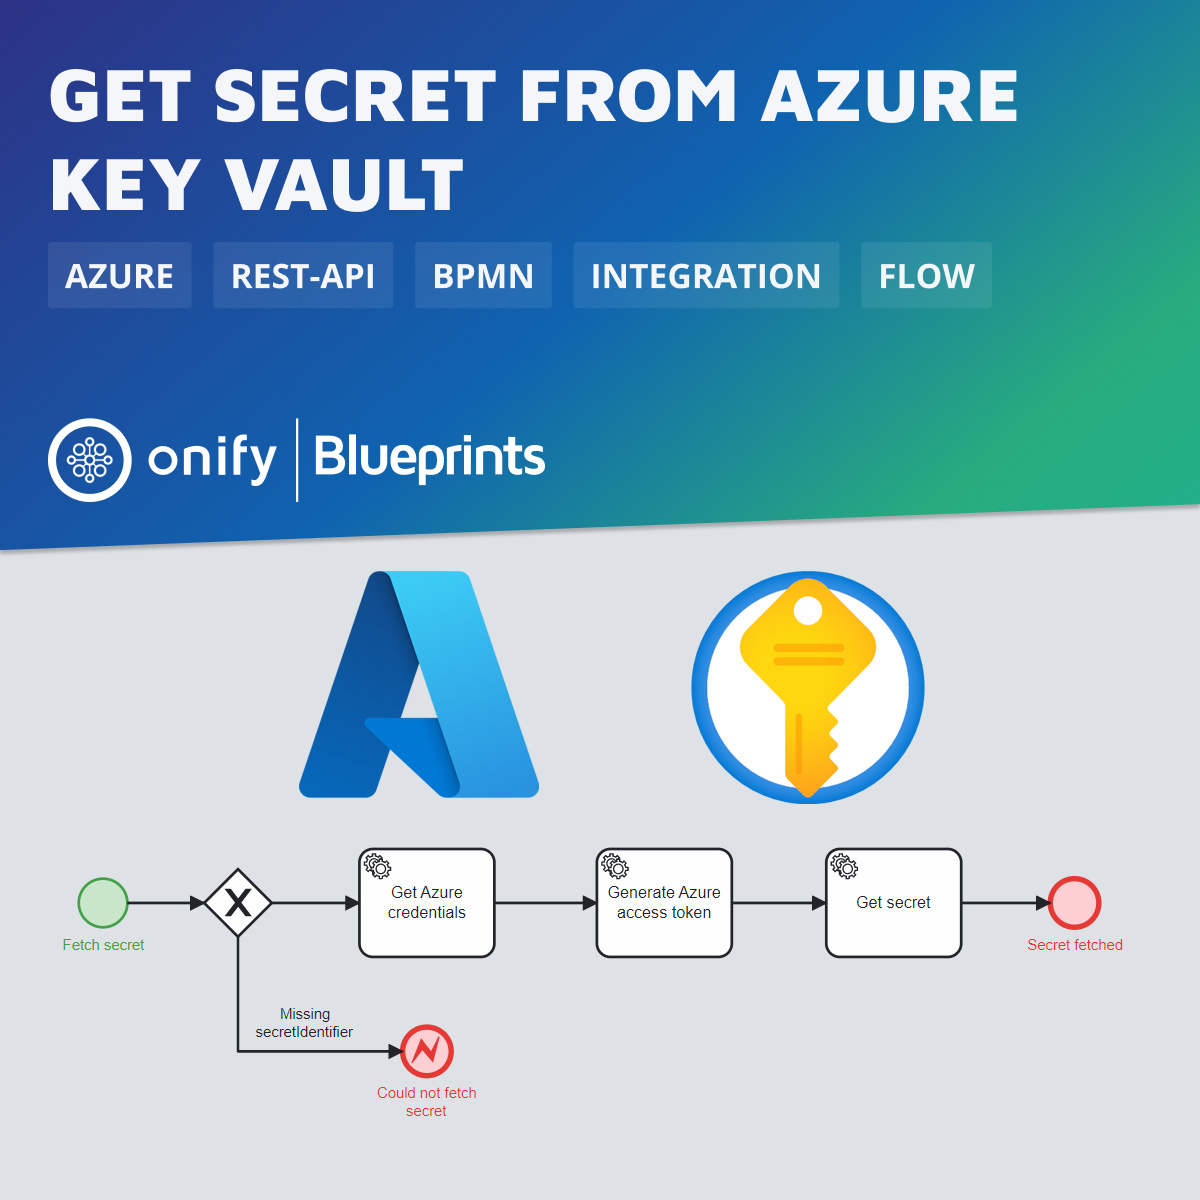 Onify Blueprint – Get secret from Azure Key vault